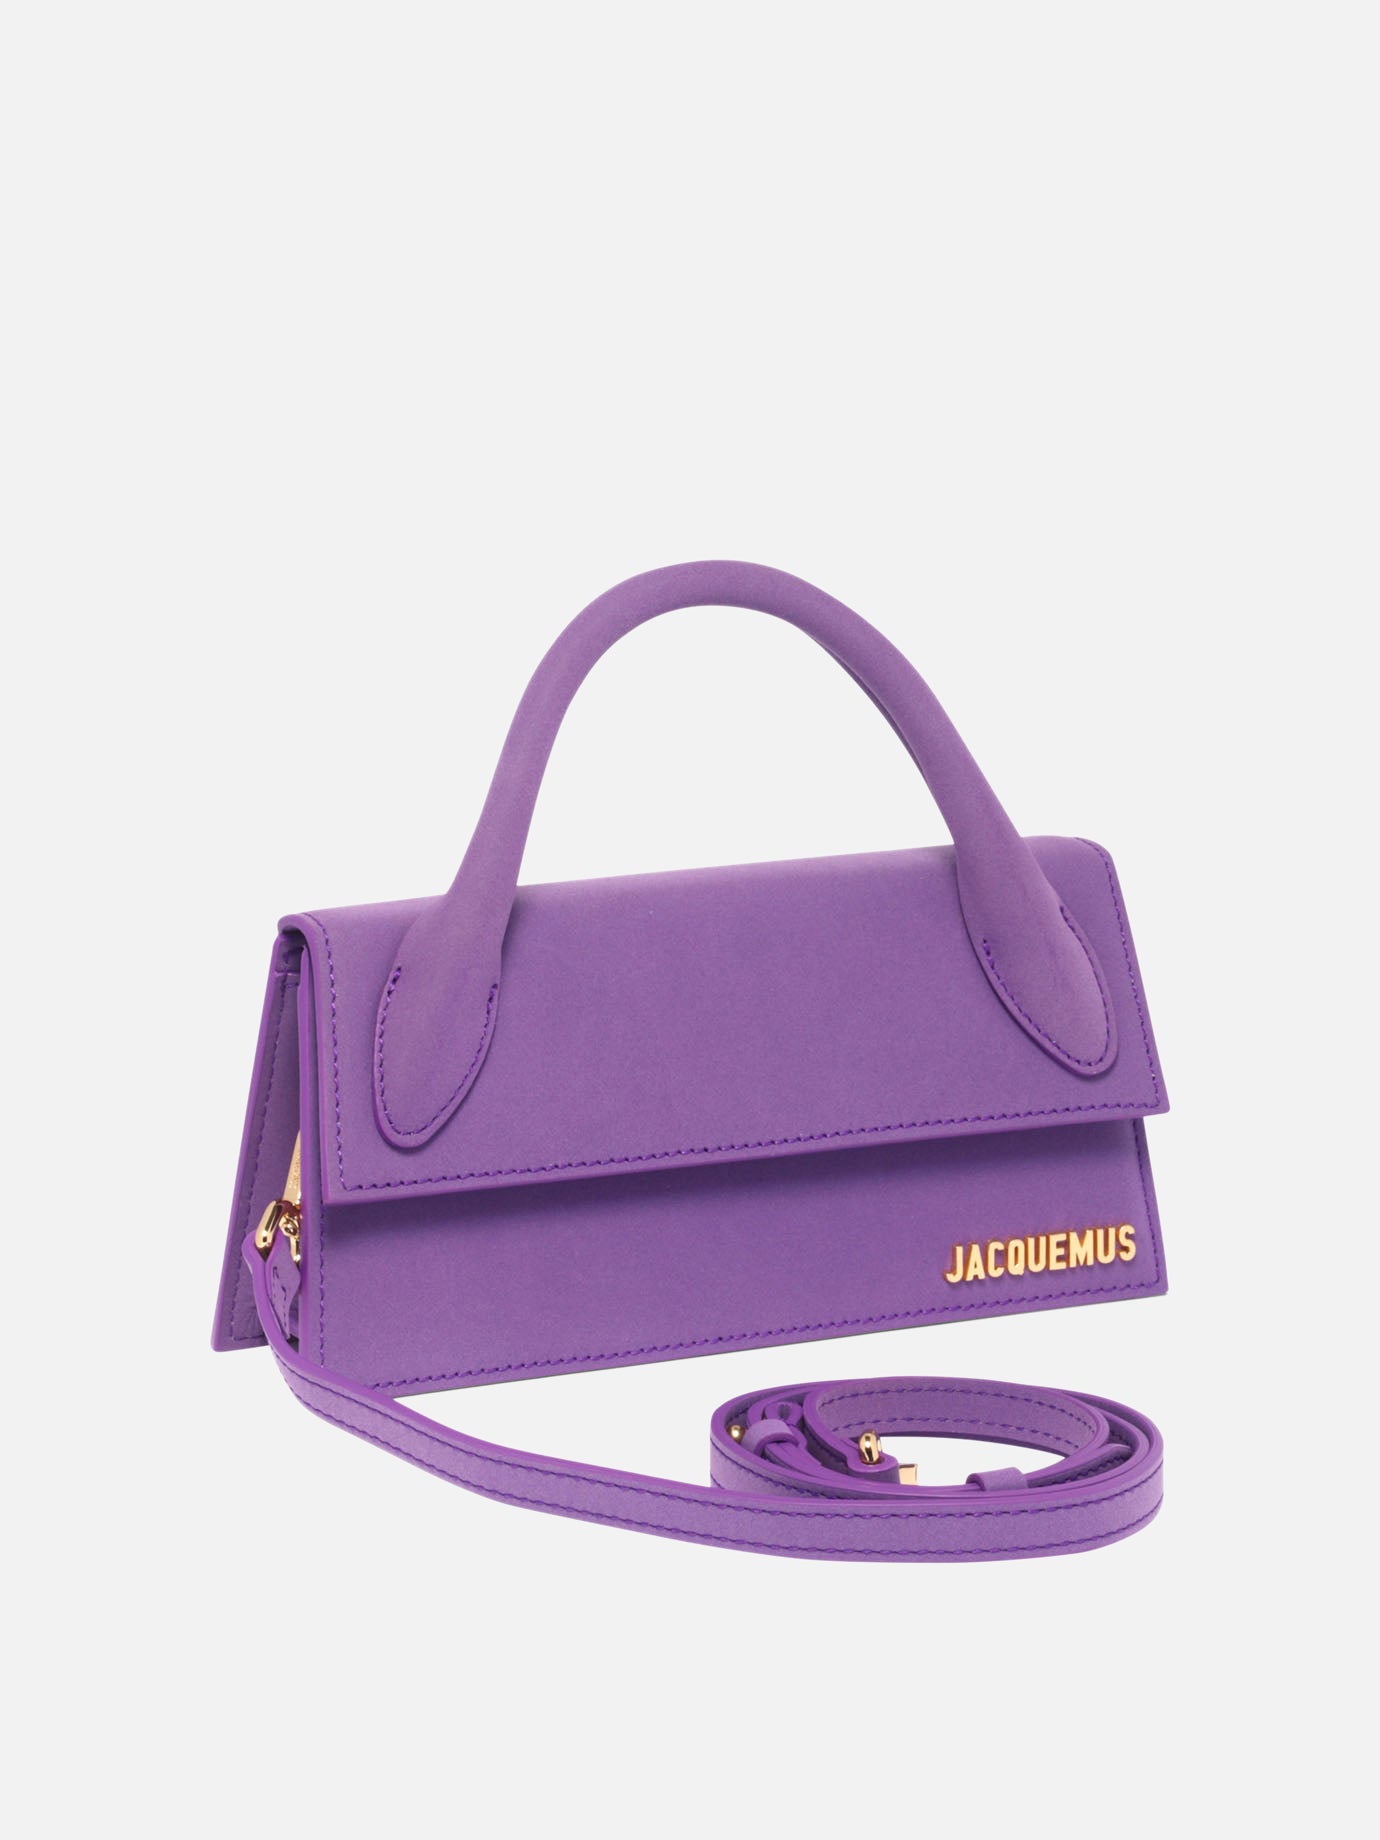 "Le Chiquito long" handbag